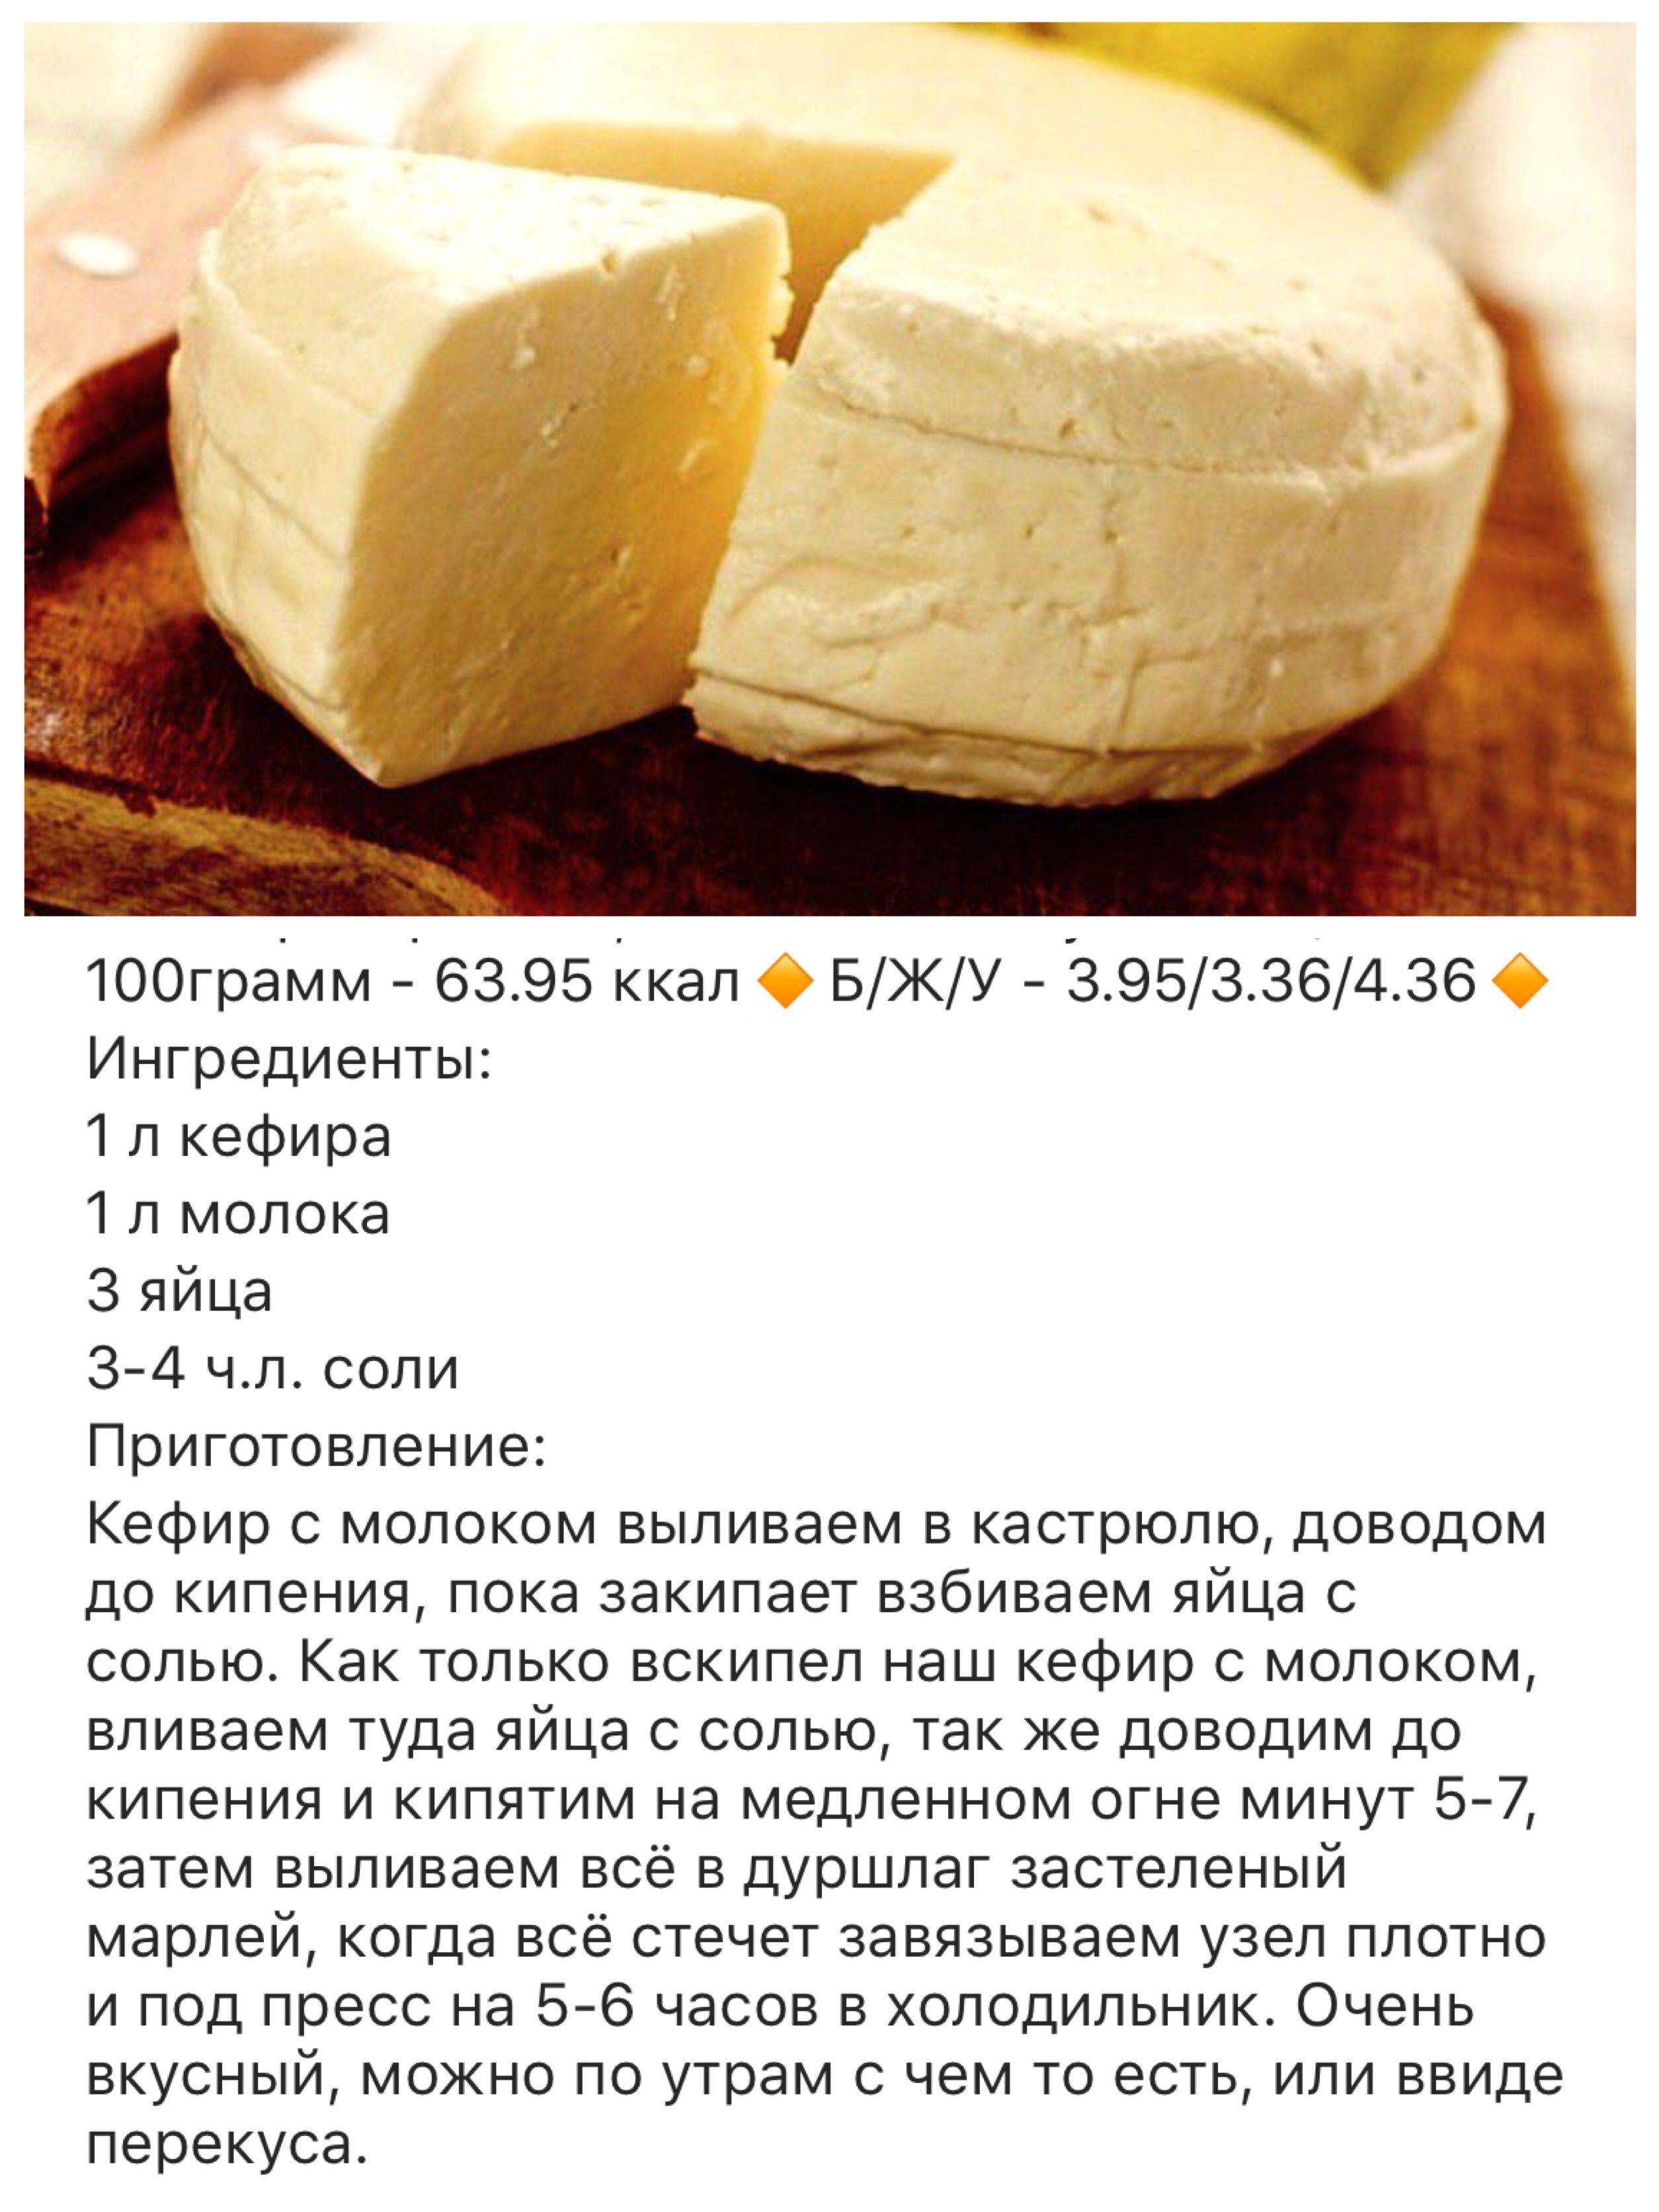 Плавленый сыр из творога в домашних условиях: рецепт с фото